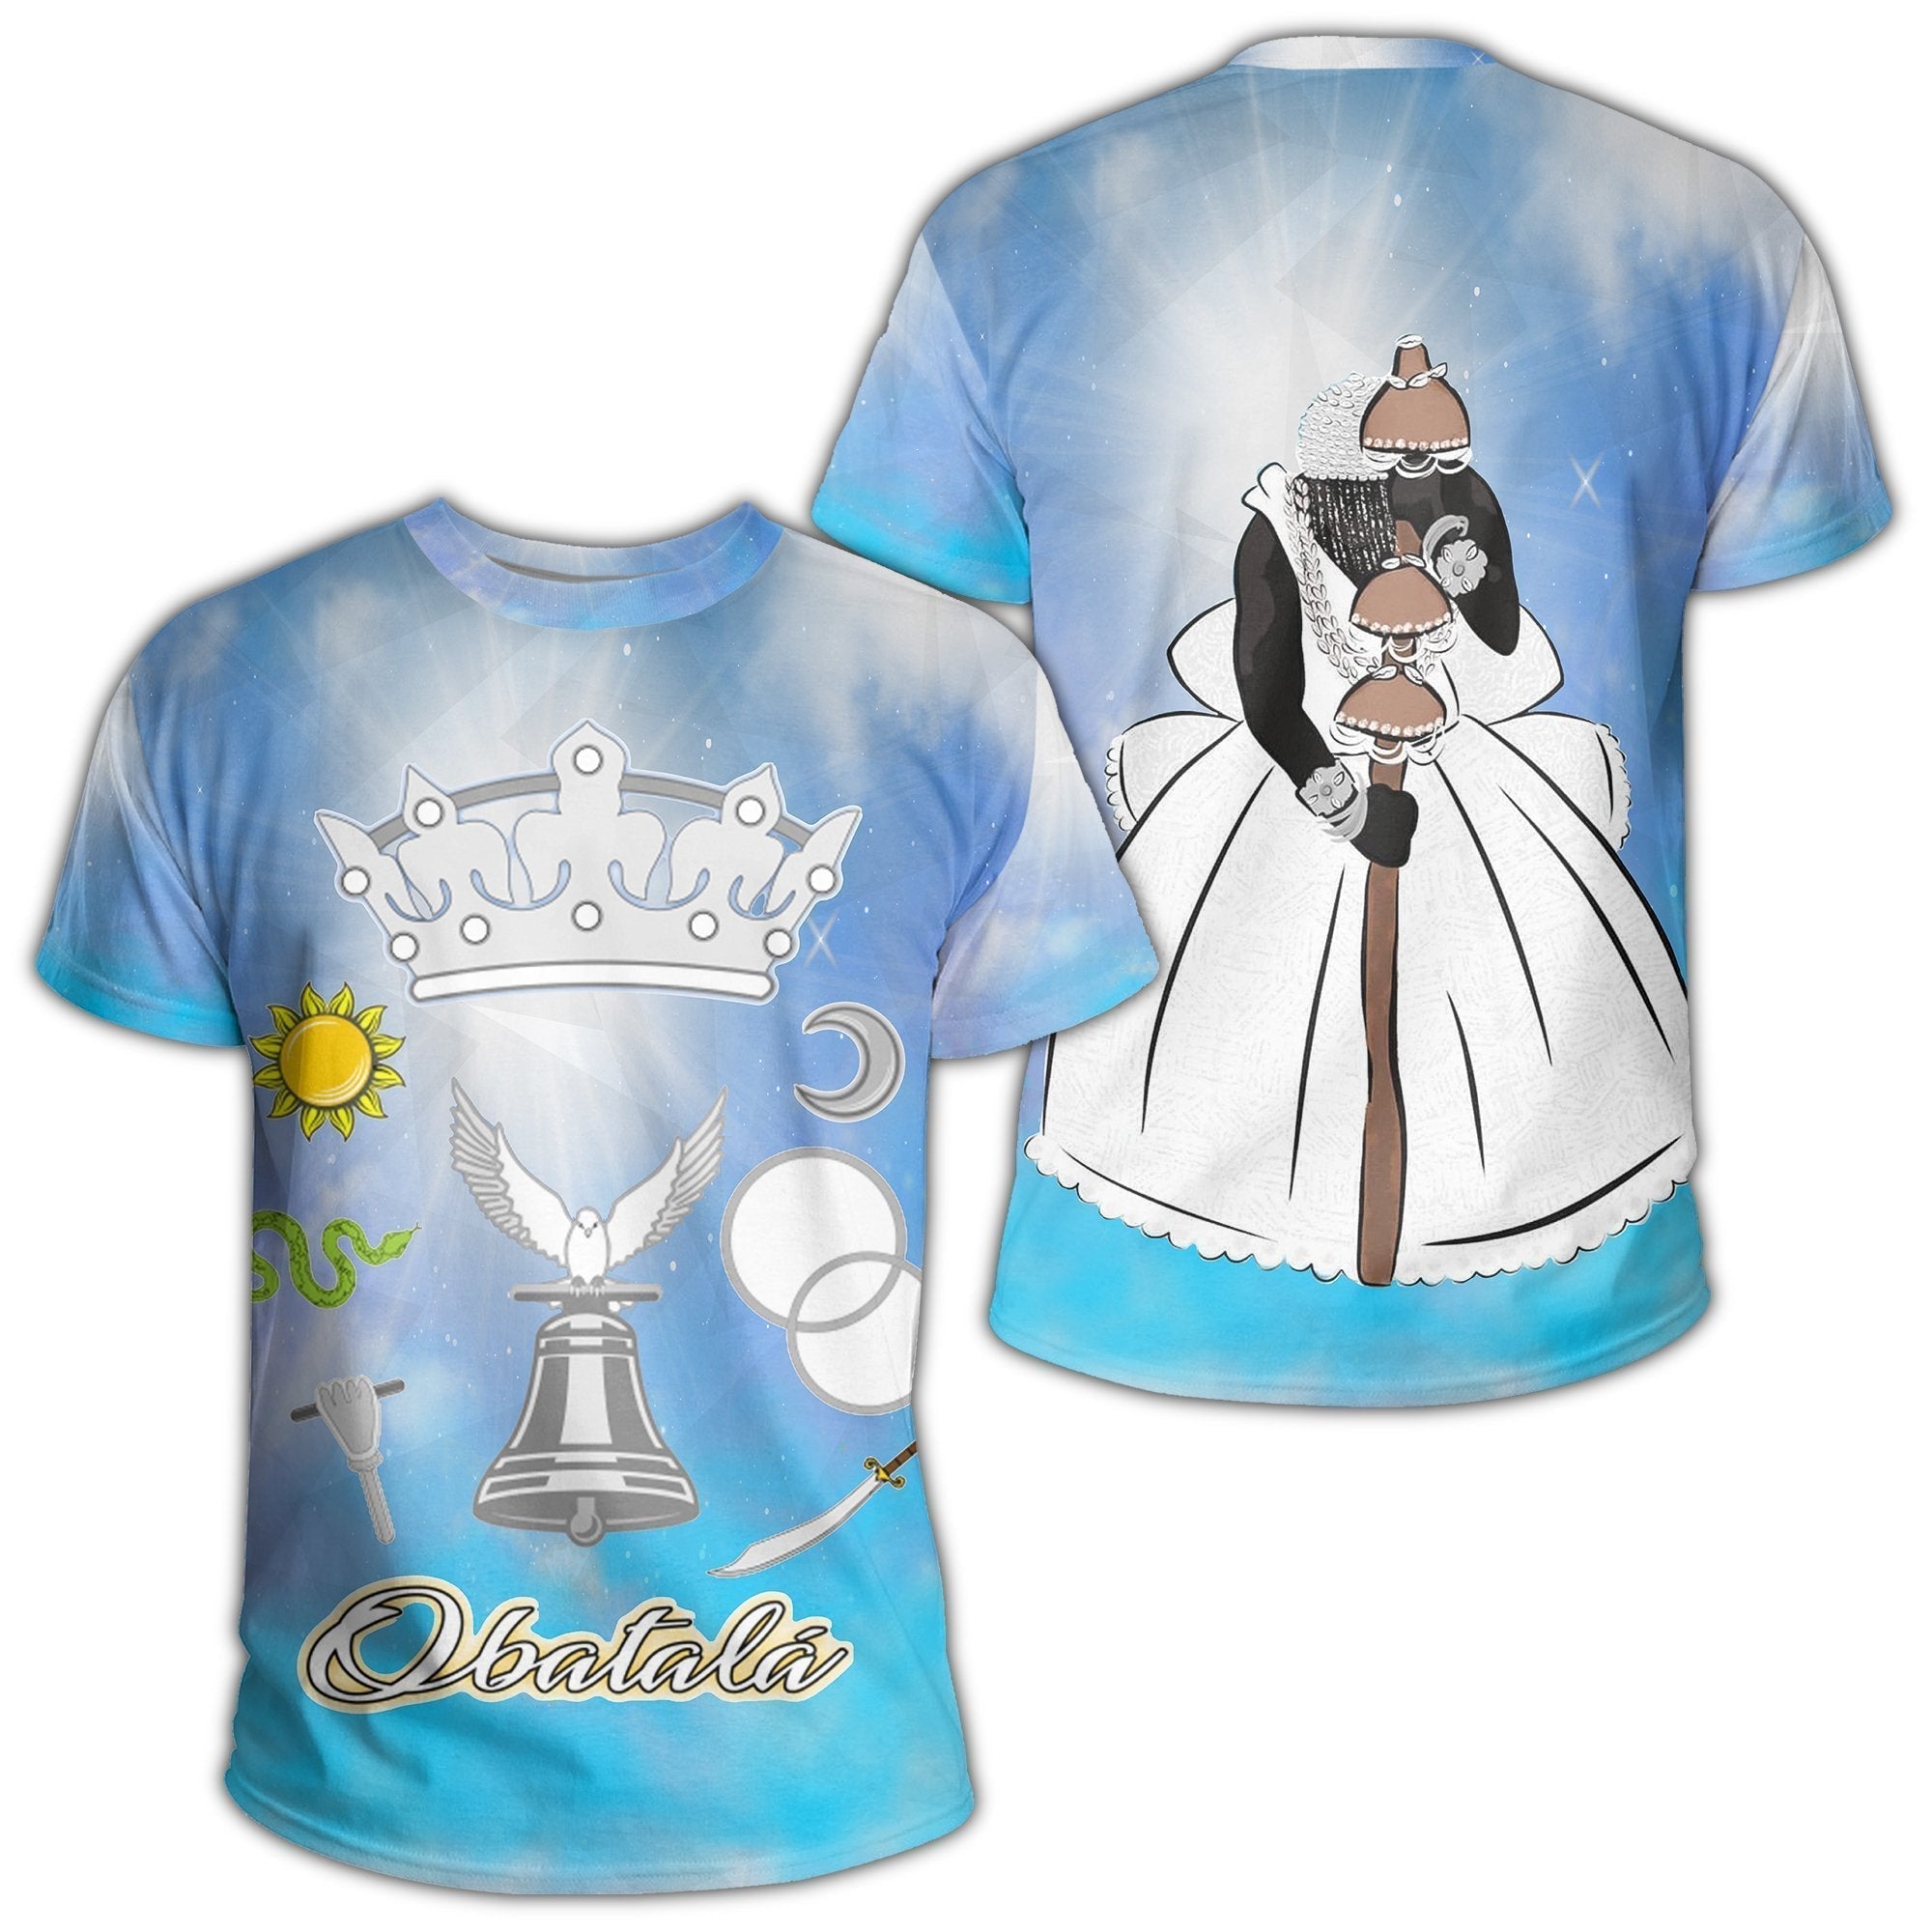 wonder-print-shop-t-shirt-orisha-obatala-symbol-t-shirt